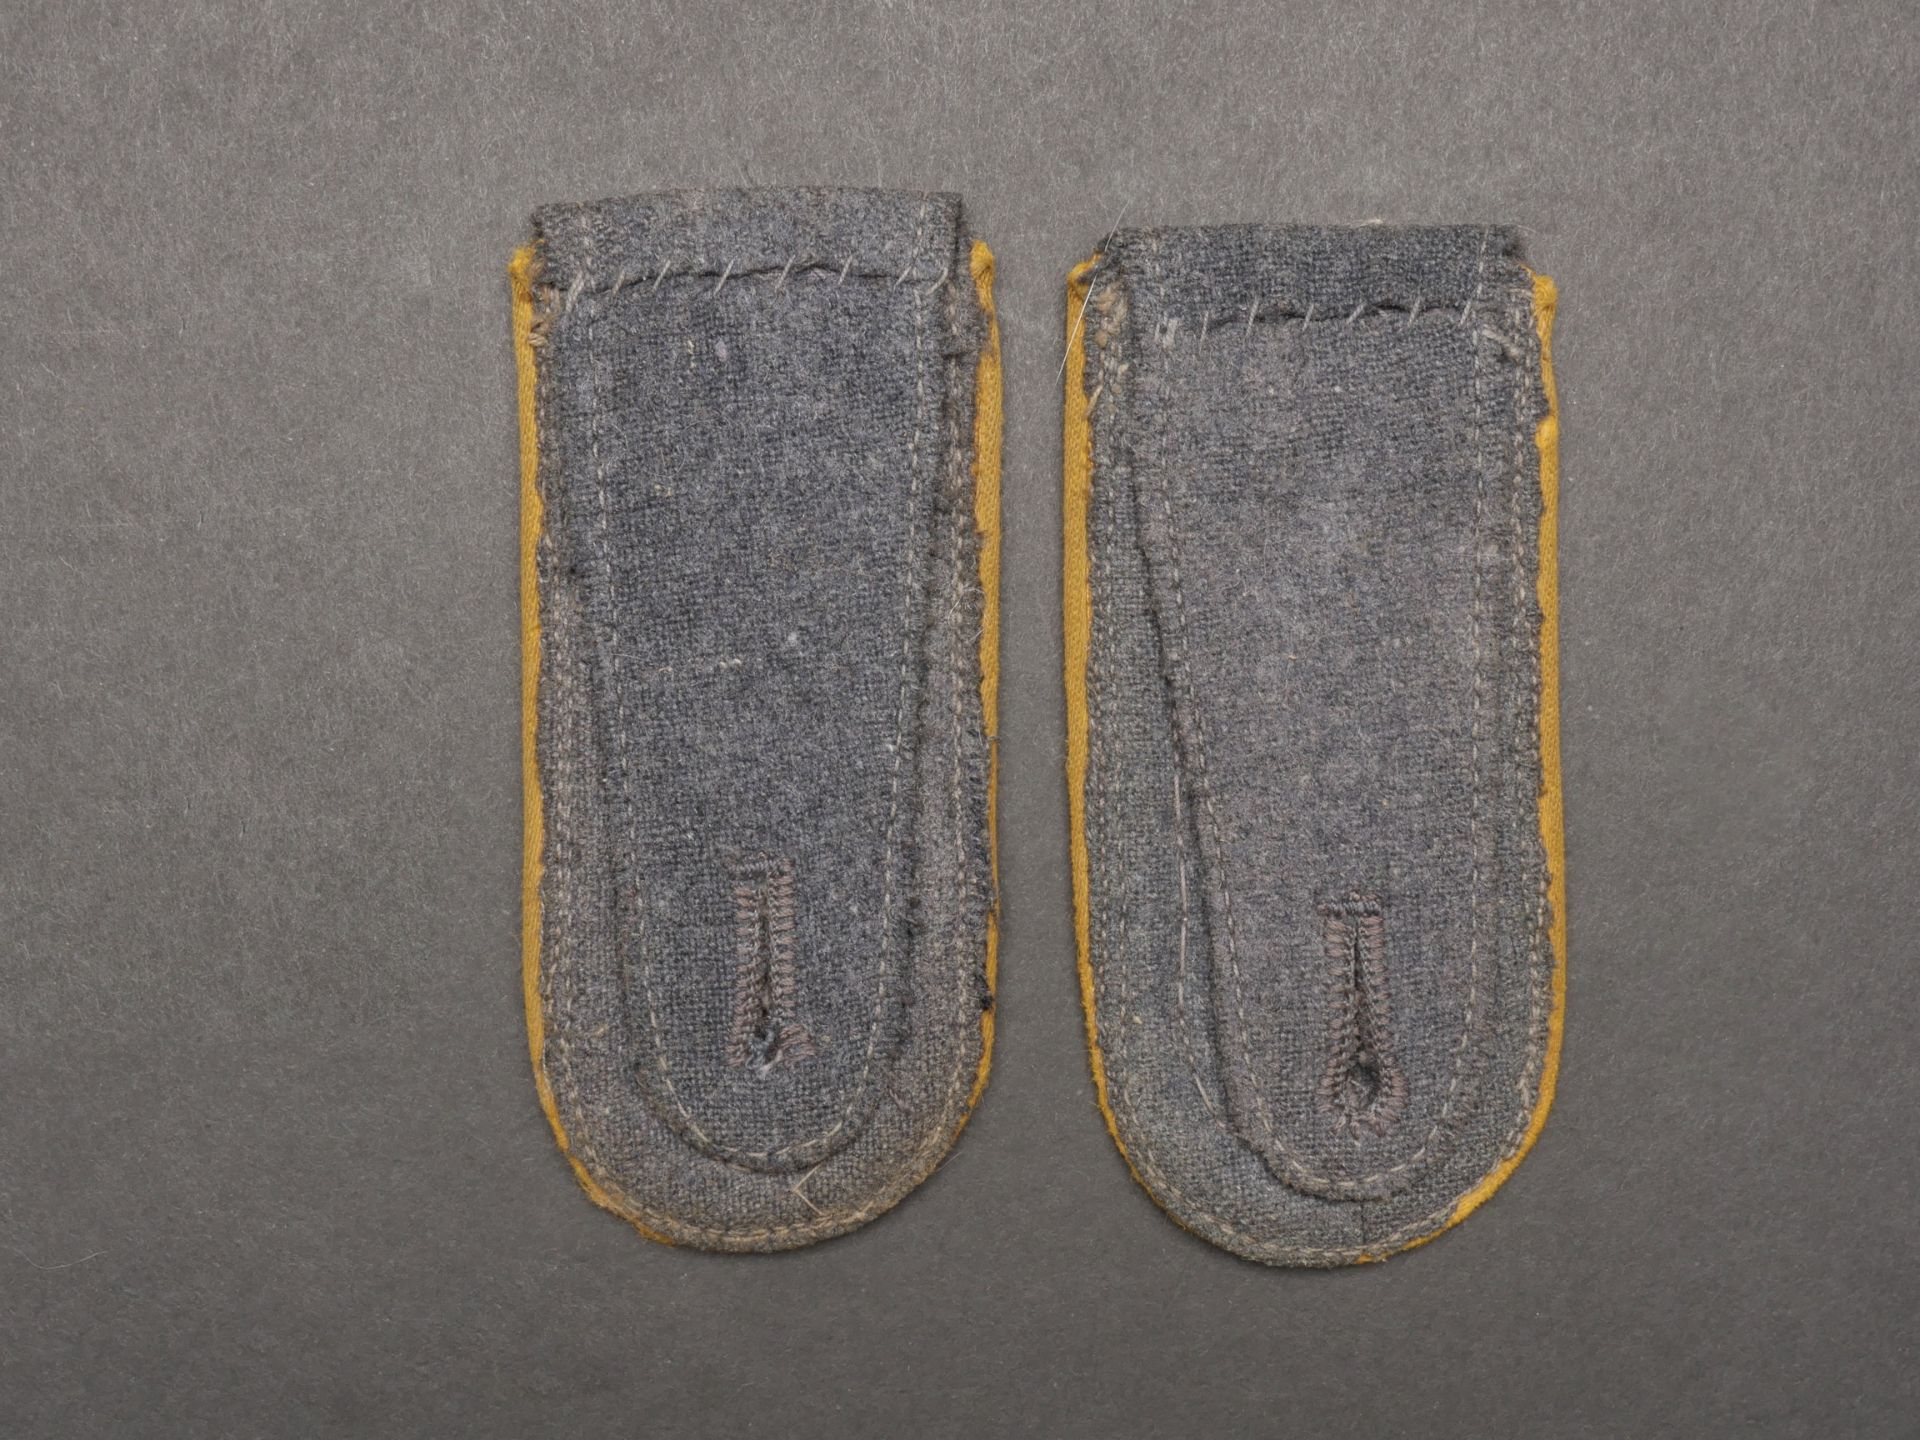 Pattes d epaule du personnel parachutiste. Parachute personnel shoulder straps - Image 3 of 5